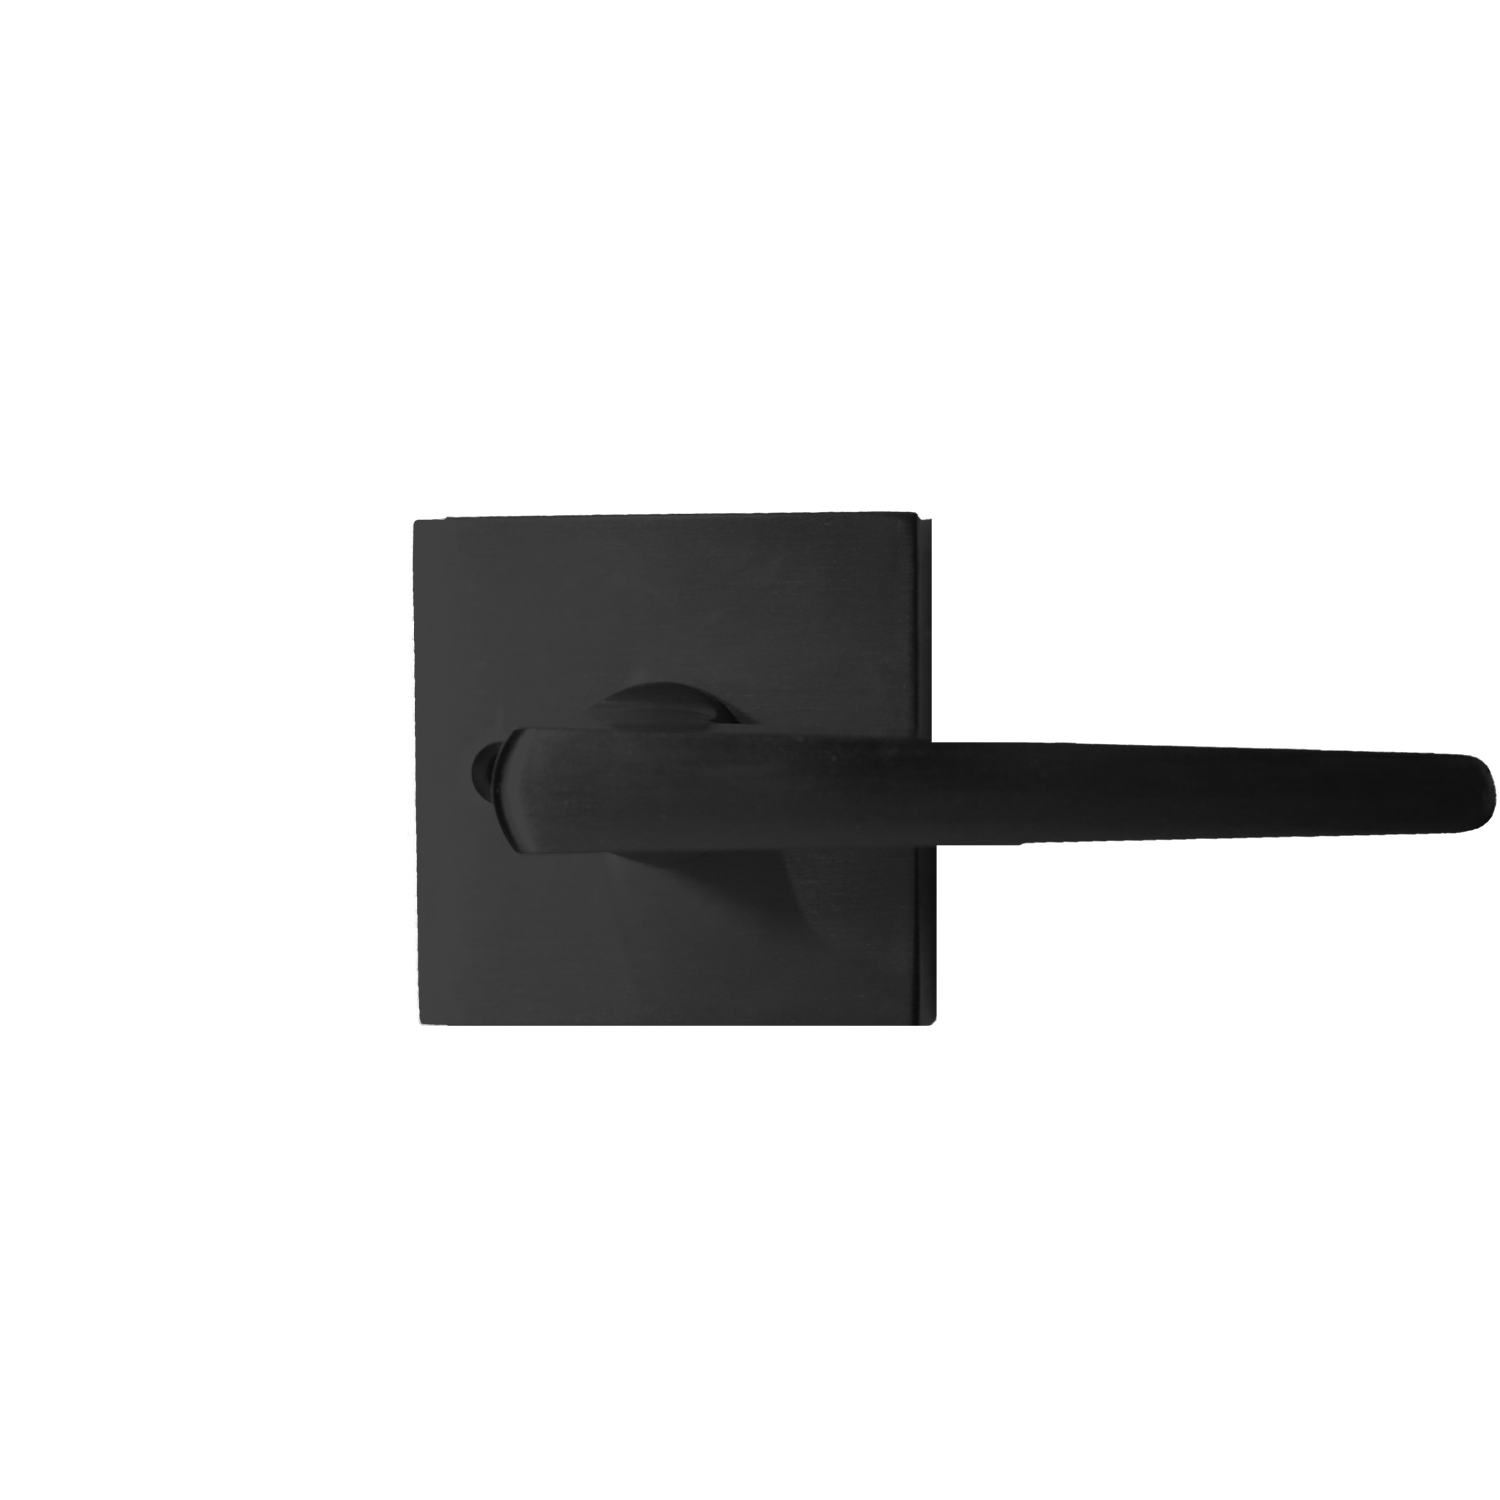 Matte black passage door lever